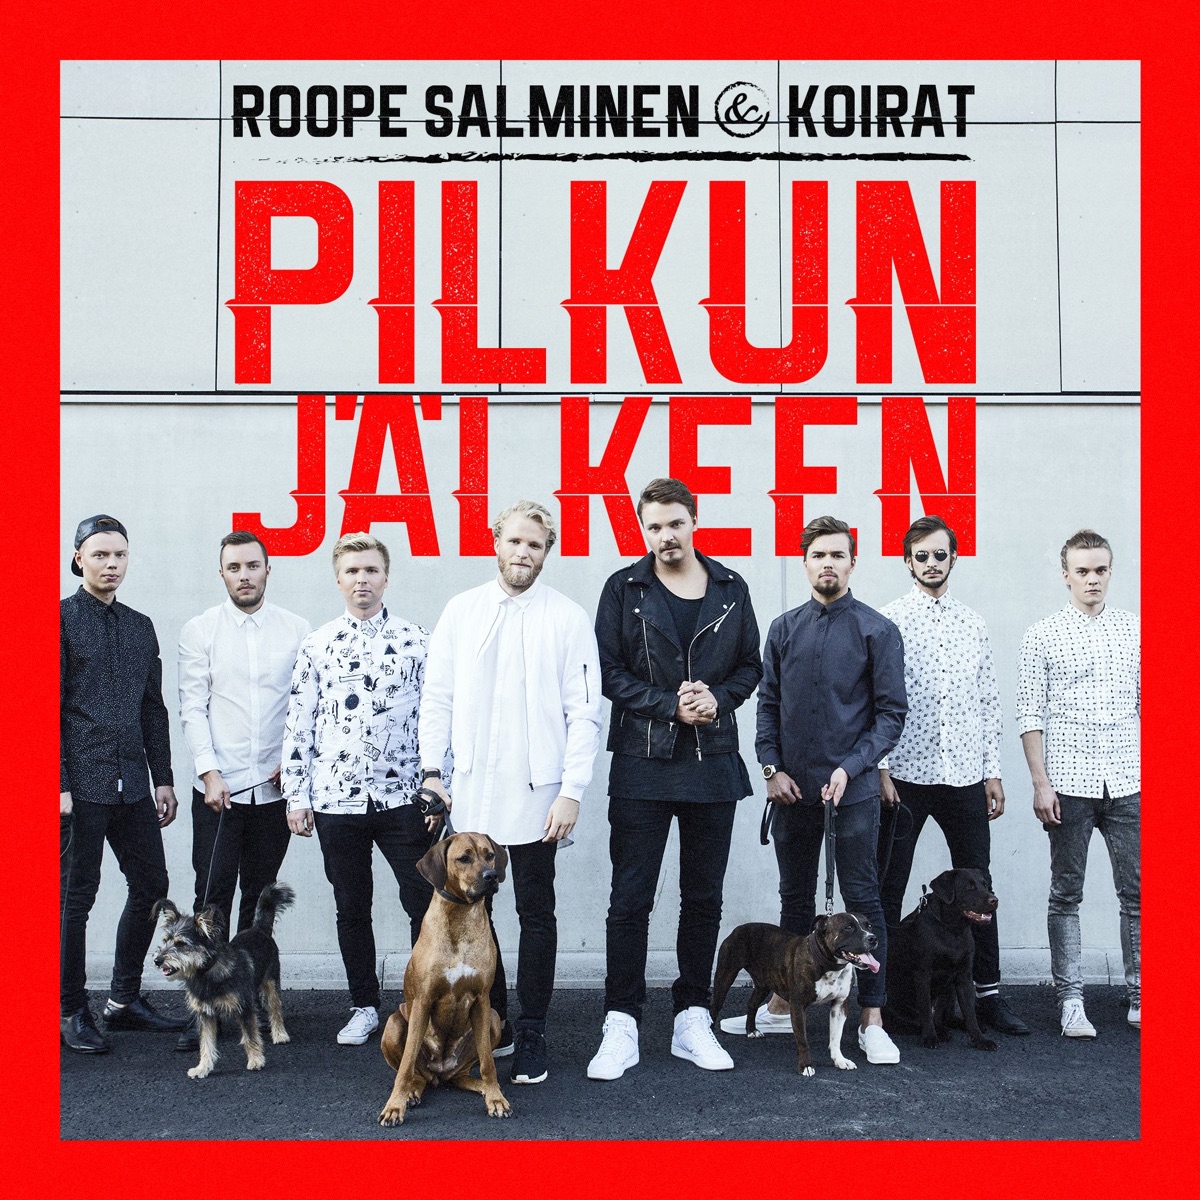 Pidä pää ylhääl (feat. Reeta) - Single - Album by Roope Salminen & Koirat -  Apple Music